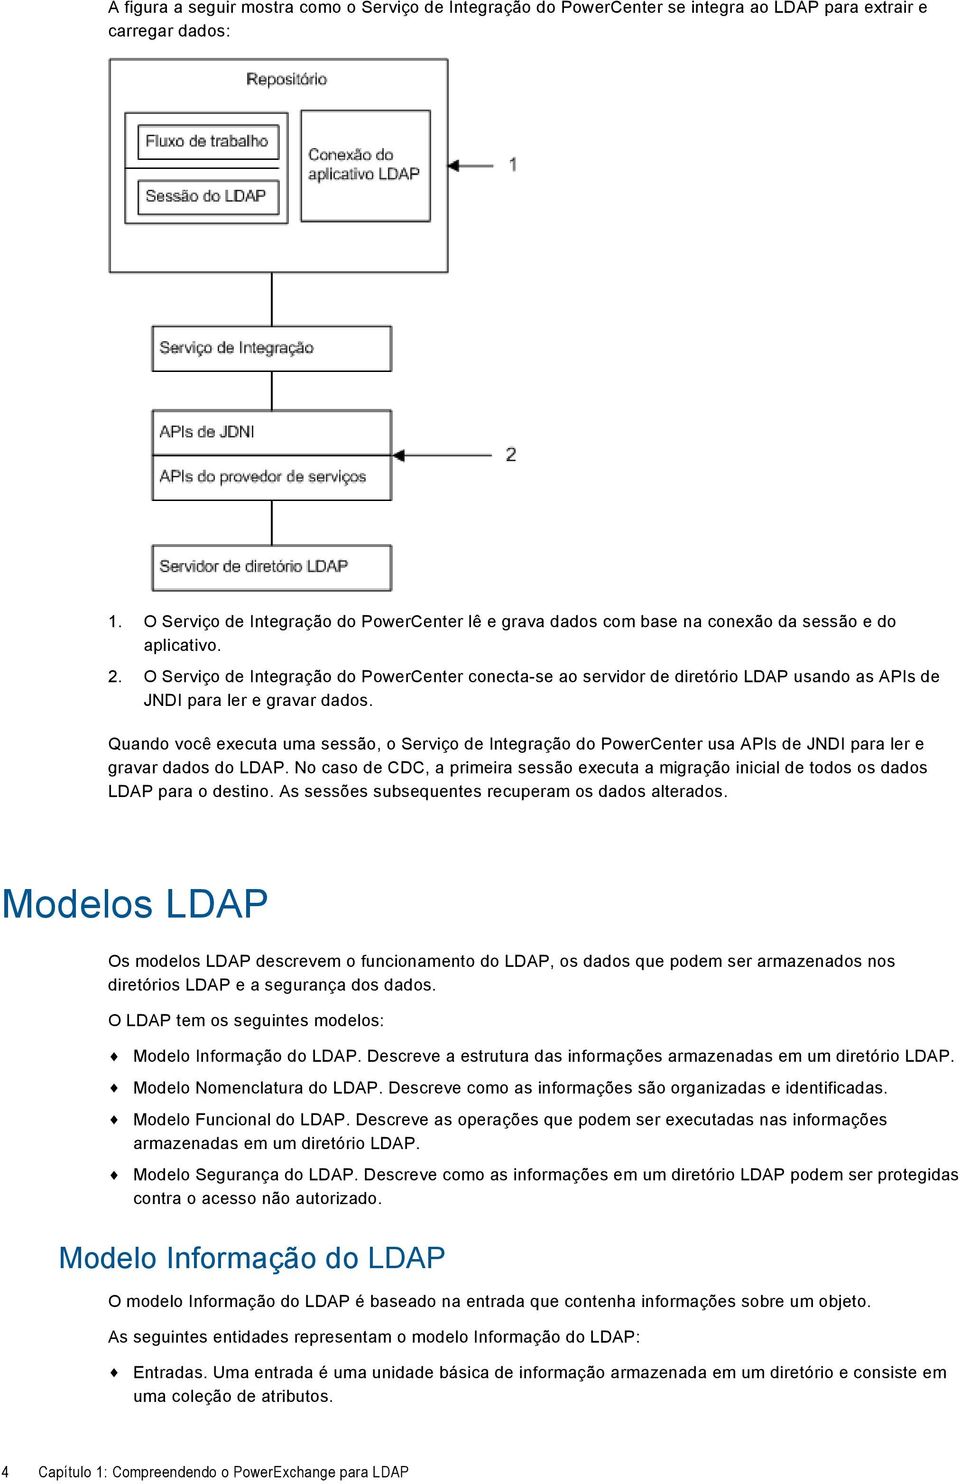 O Serviço de Integração do PowerCenter conecta-se ao servidor de diretório LDAP usando as APIs de JNDI para ler e gravar dados.